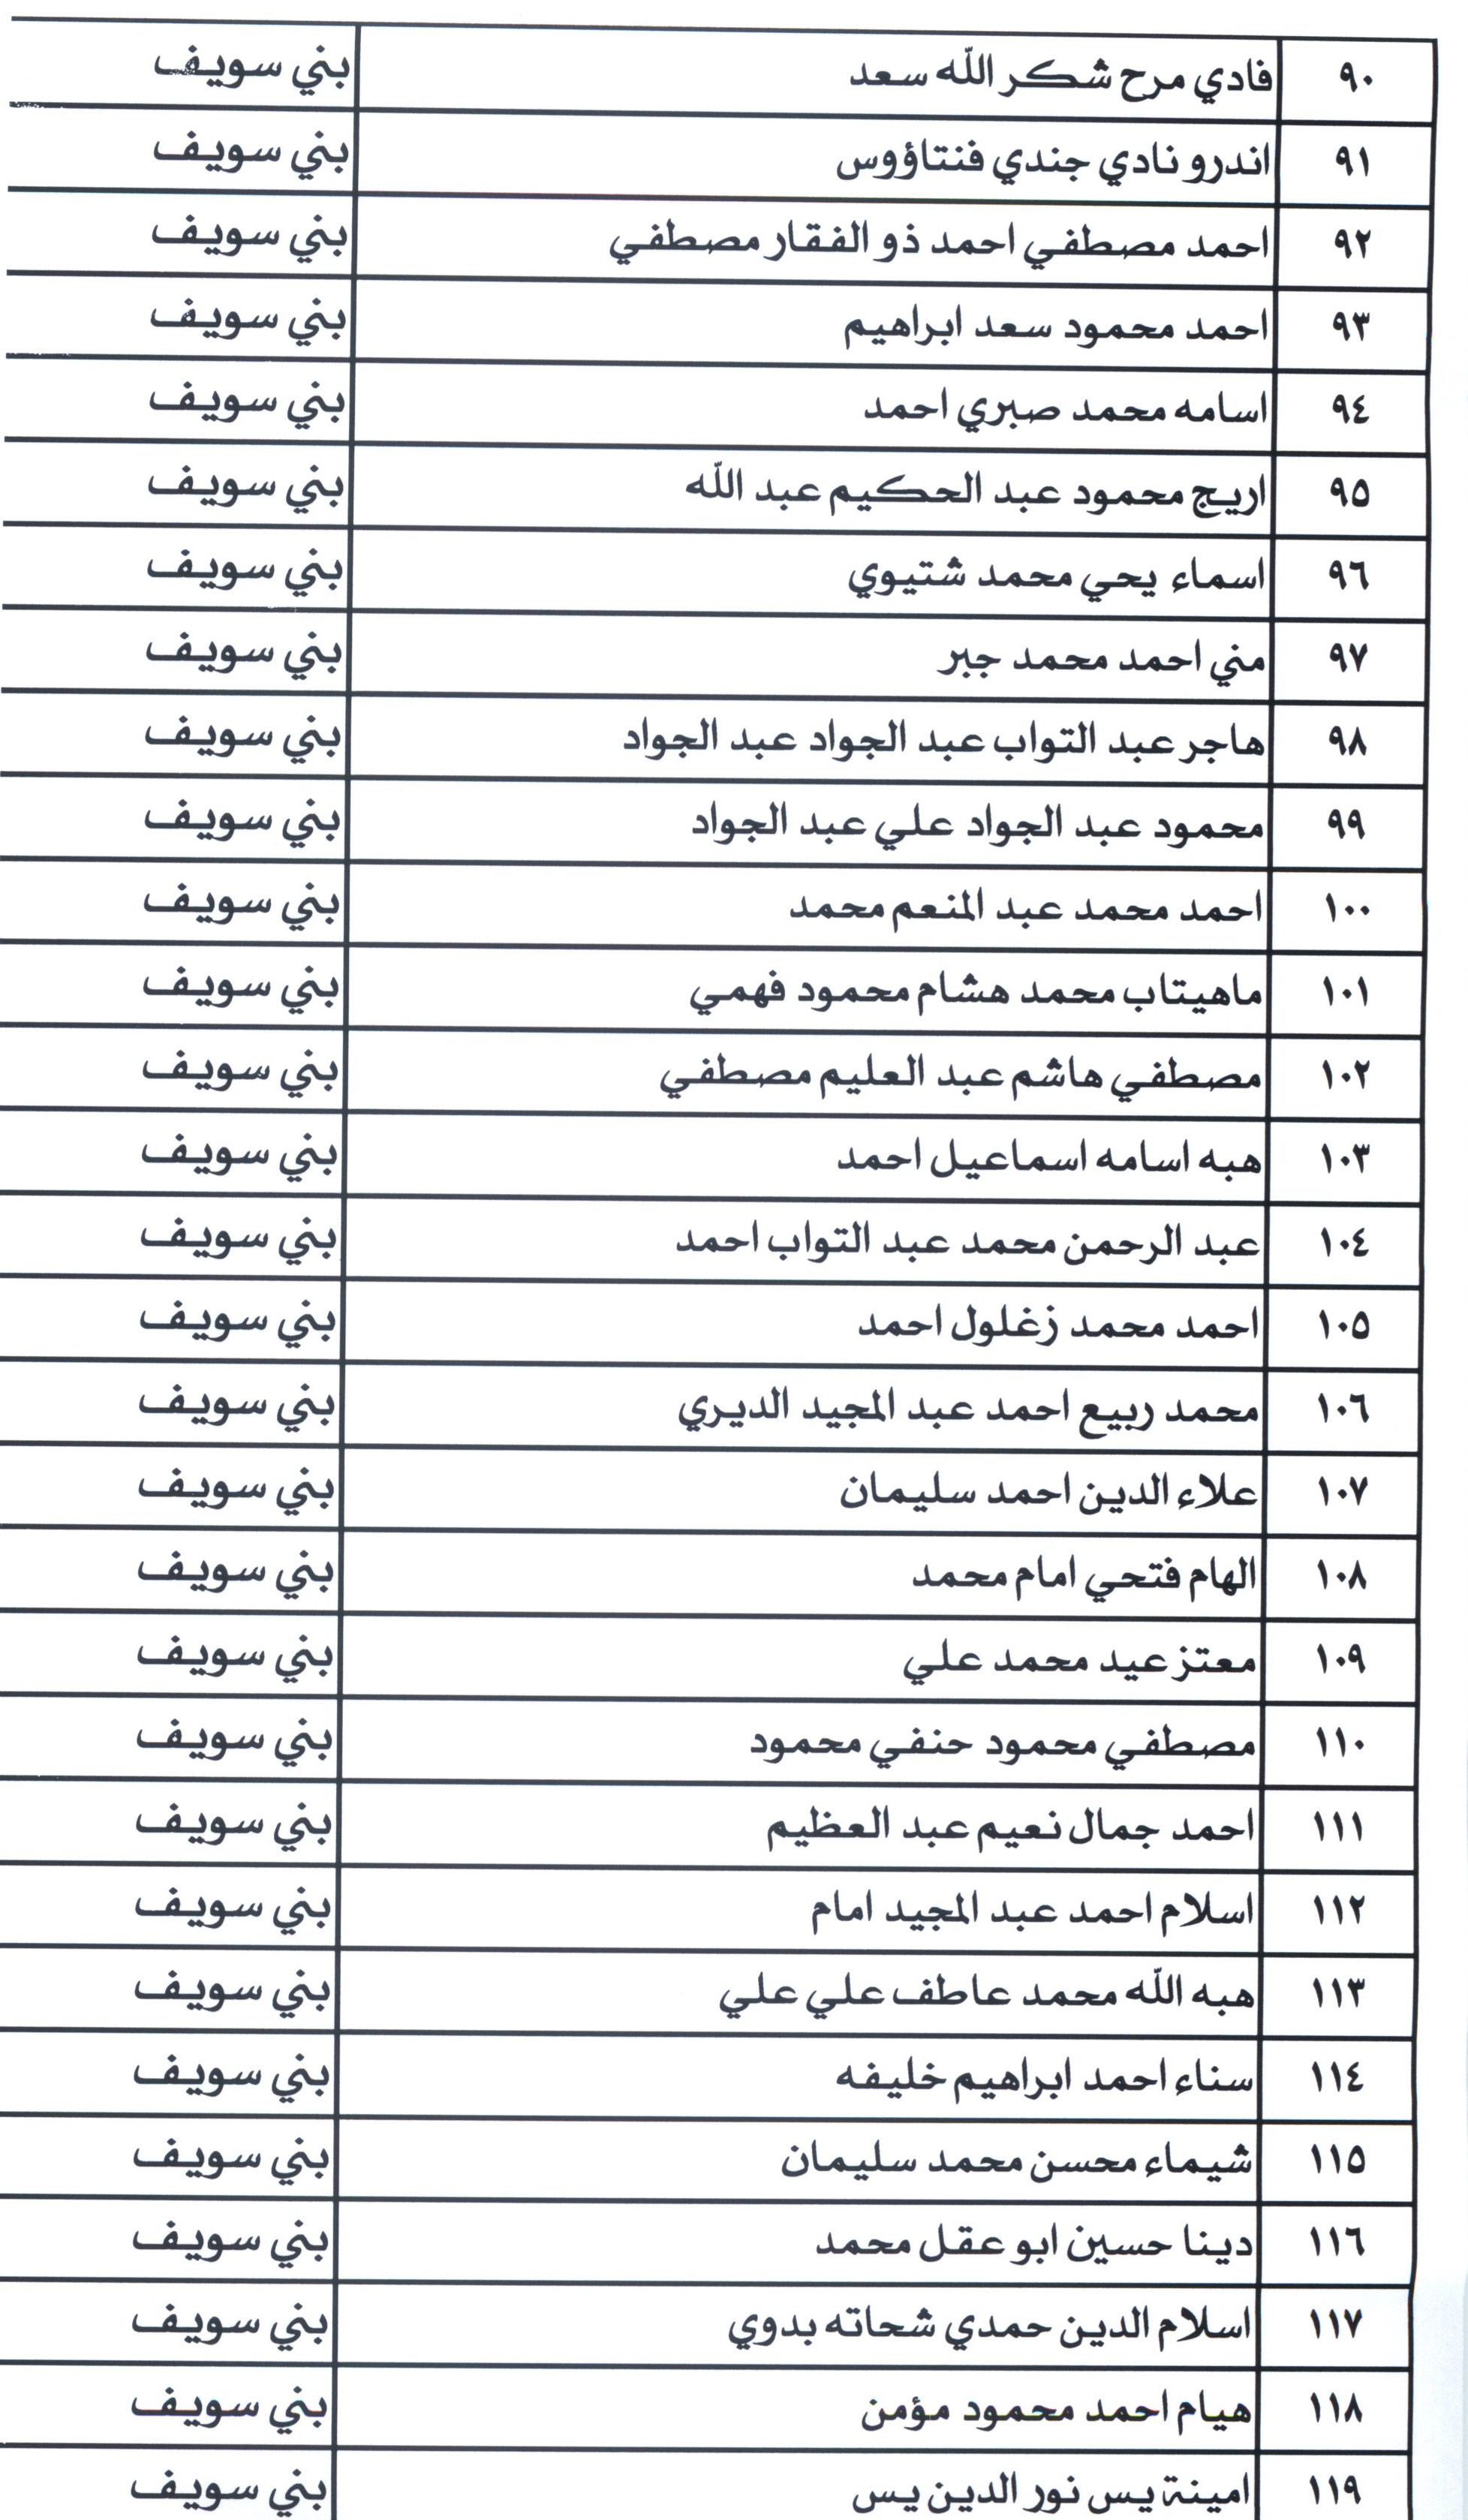 أسماء مرشحى شغل الوظائف ببمحافظة بنى سويف (1)